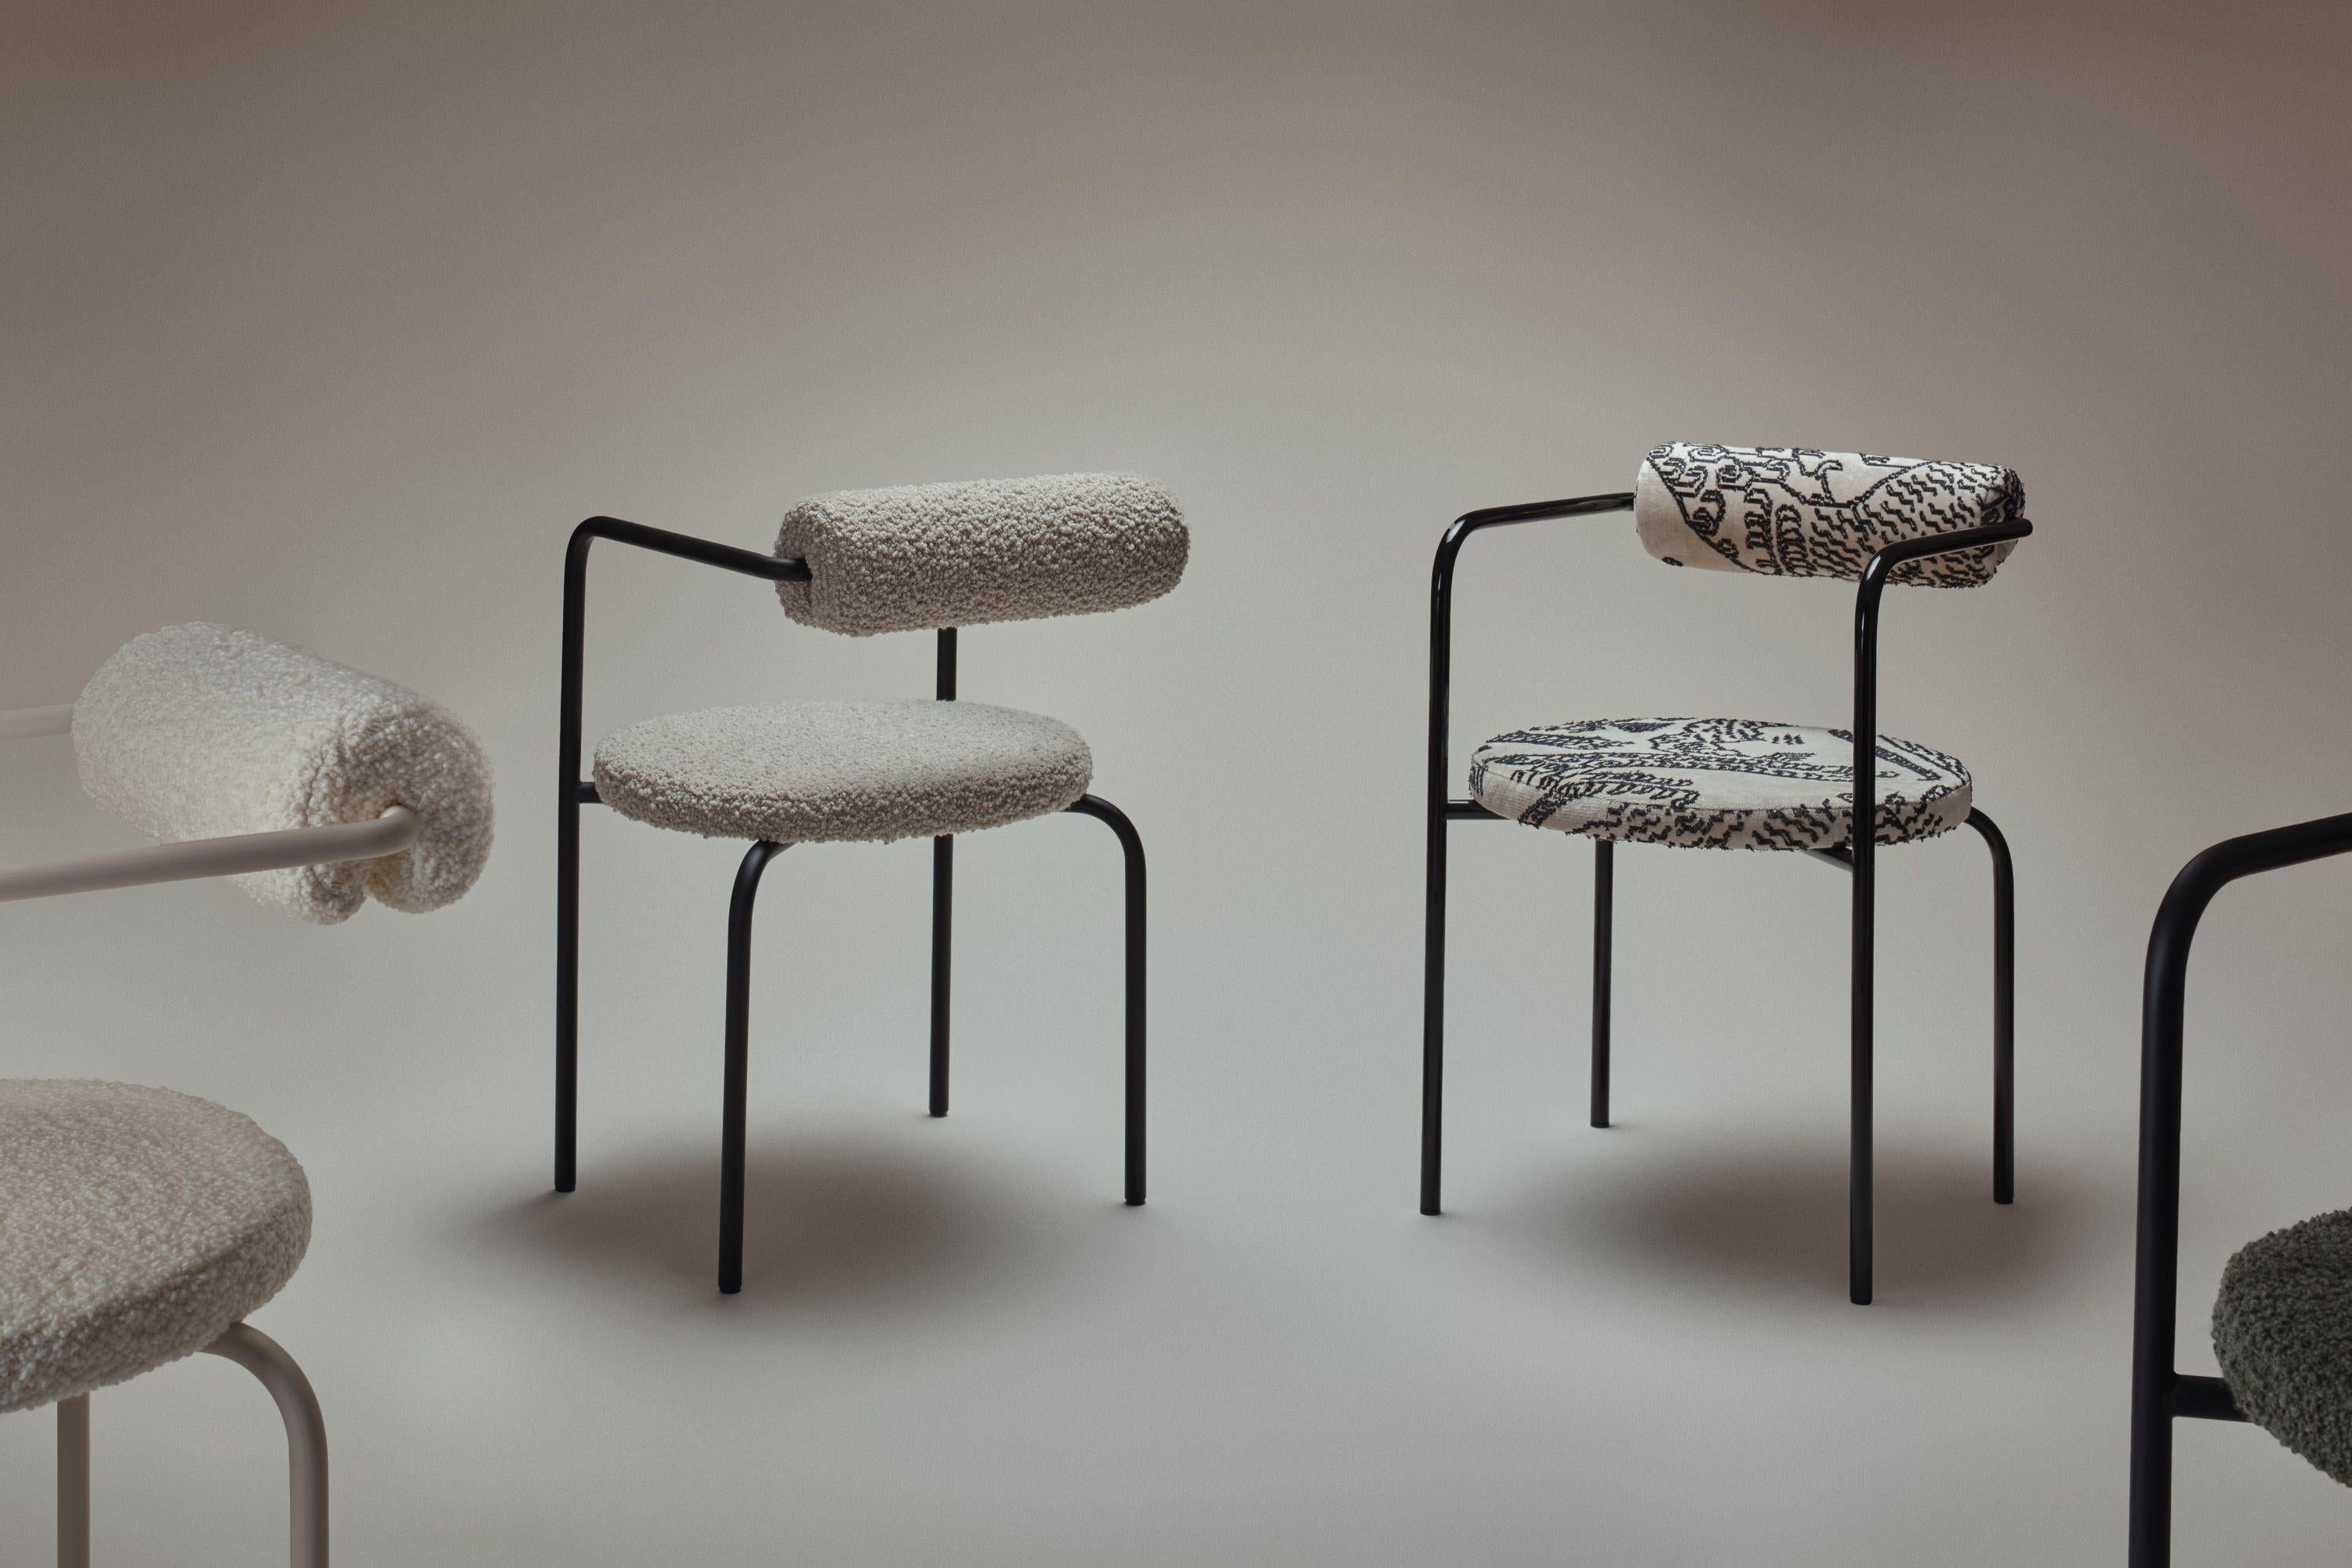 Stahlstuhl mit hochwertigem Stoff von Dedar Milano. Entworfen von Monika Szyca-Thomas für The Good Living&Co im Jahr 2020. Die Stühle werden zu 100 % von Hand in einer kleinen, 1927 gegründeten Werkstatt hergestellt.

Die Polsterung wird nach dem